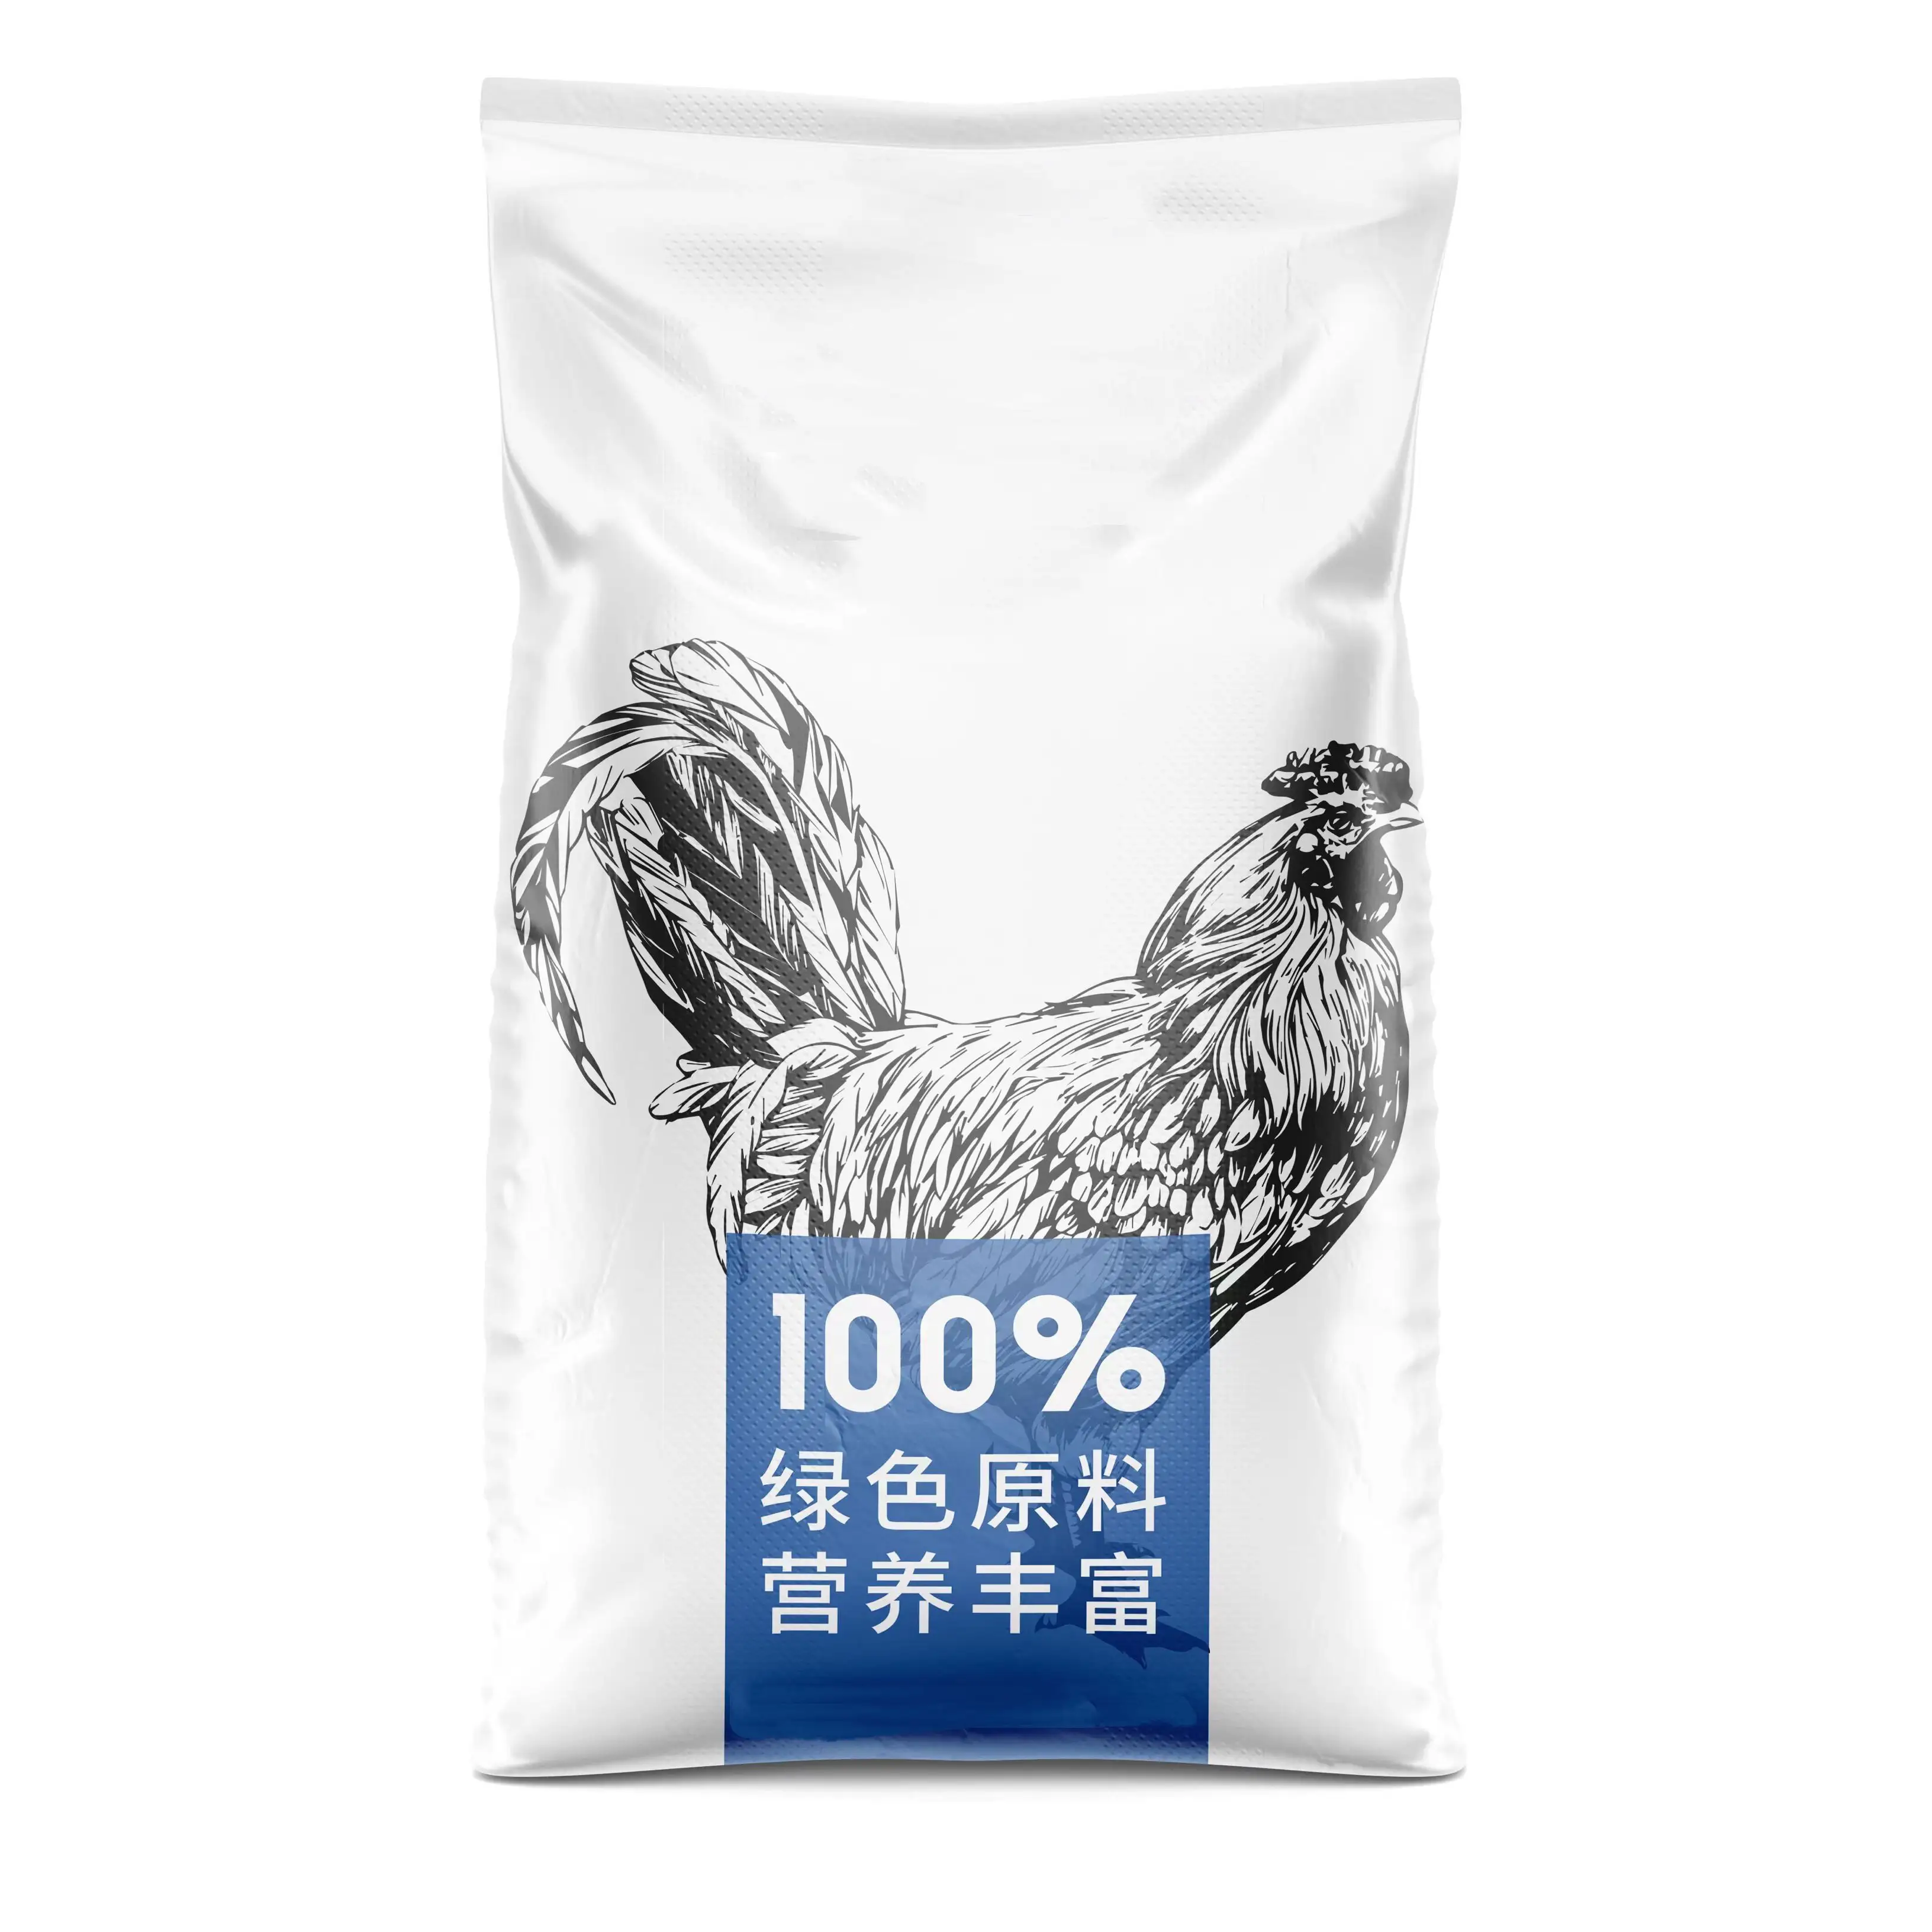 NON-GMO मकई लस भोजन चीन से बिक्री के लिए 60% न्यूनतम के तहत उच्च प्रोटीन संयंत्र प्रोटीन सोयाबीन भोजन